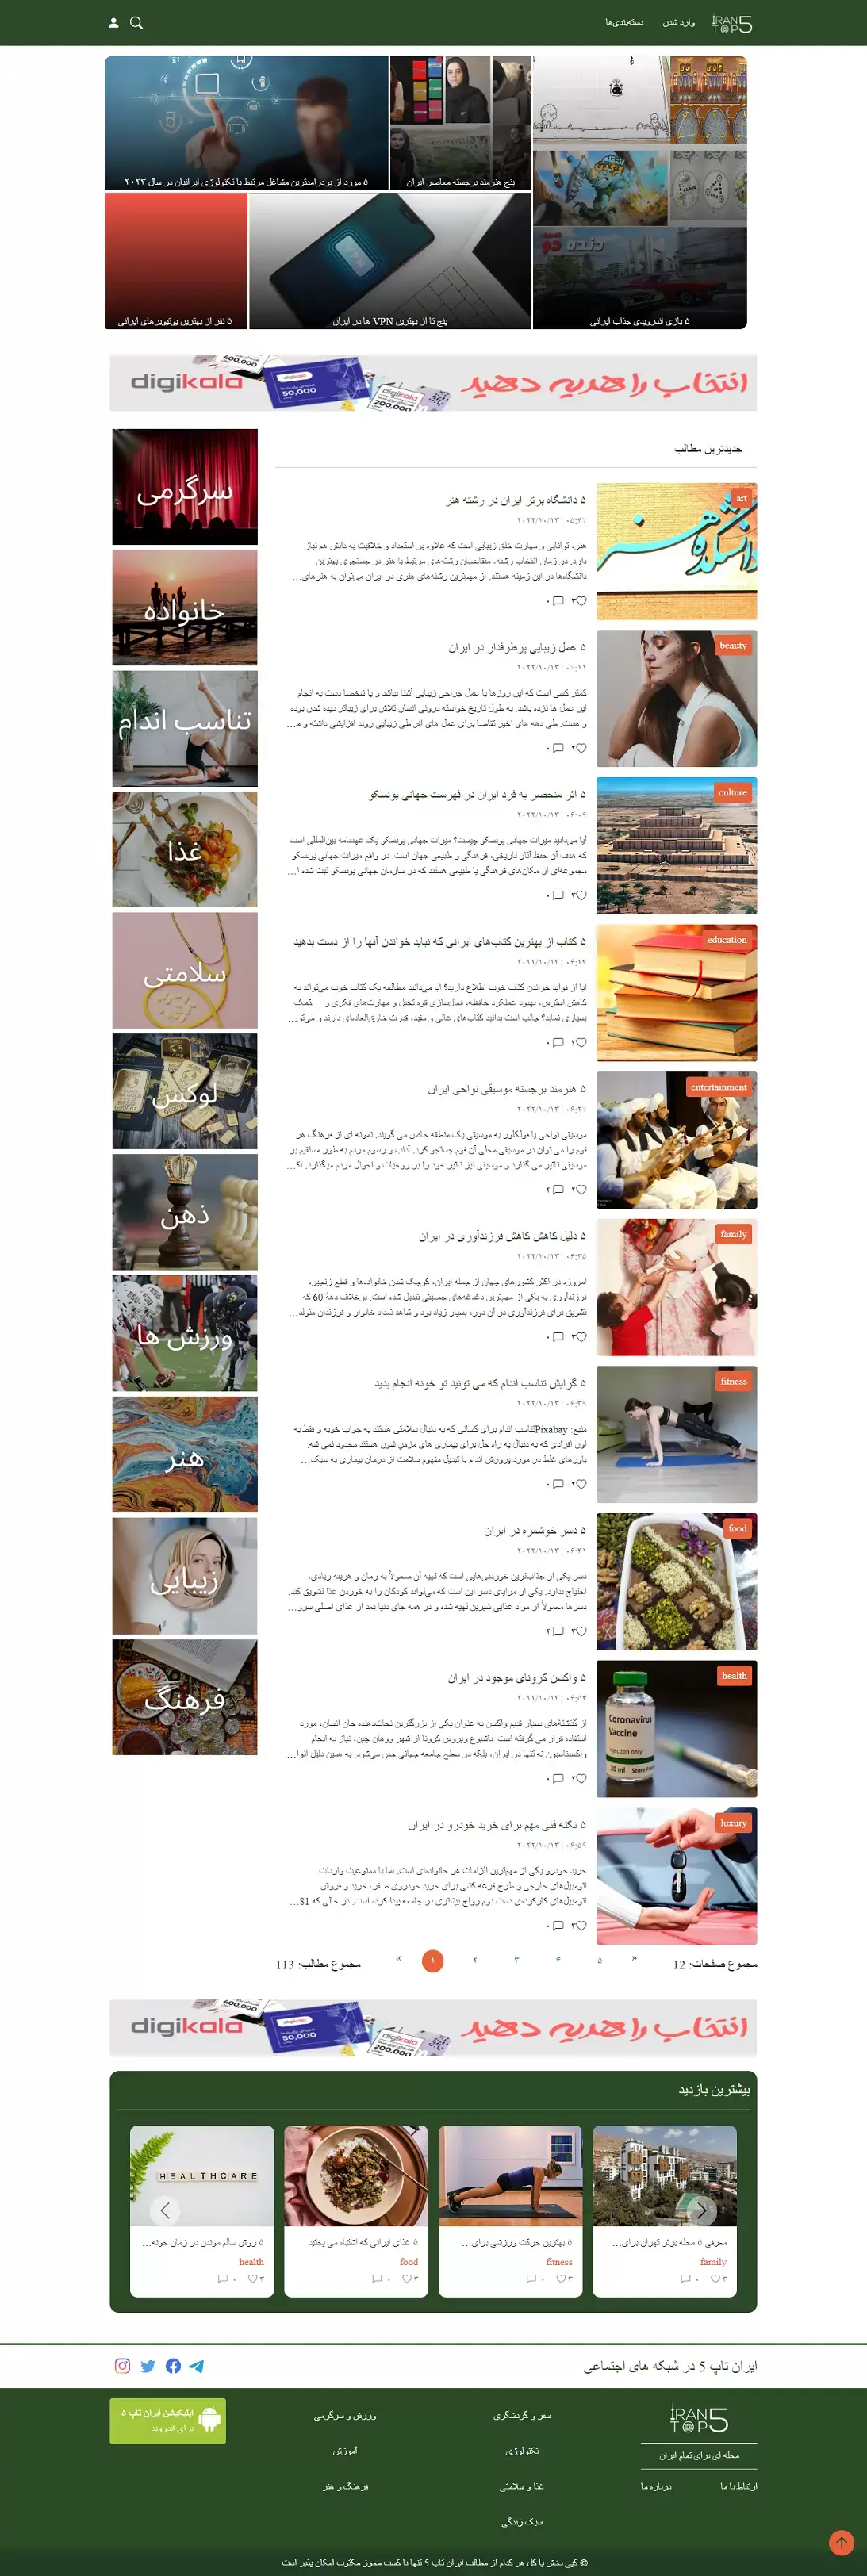 IranTop5 - Blogging website